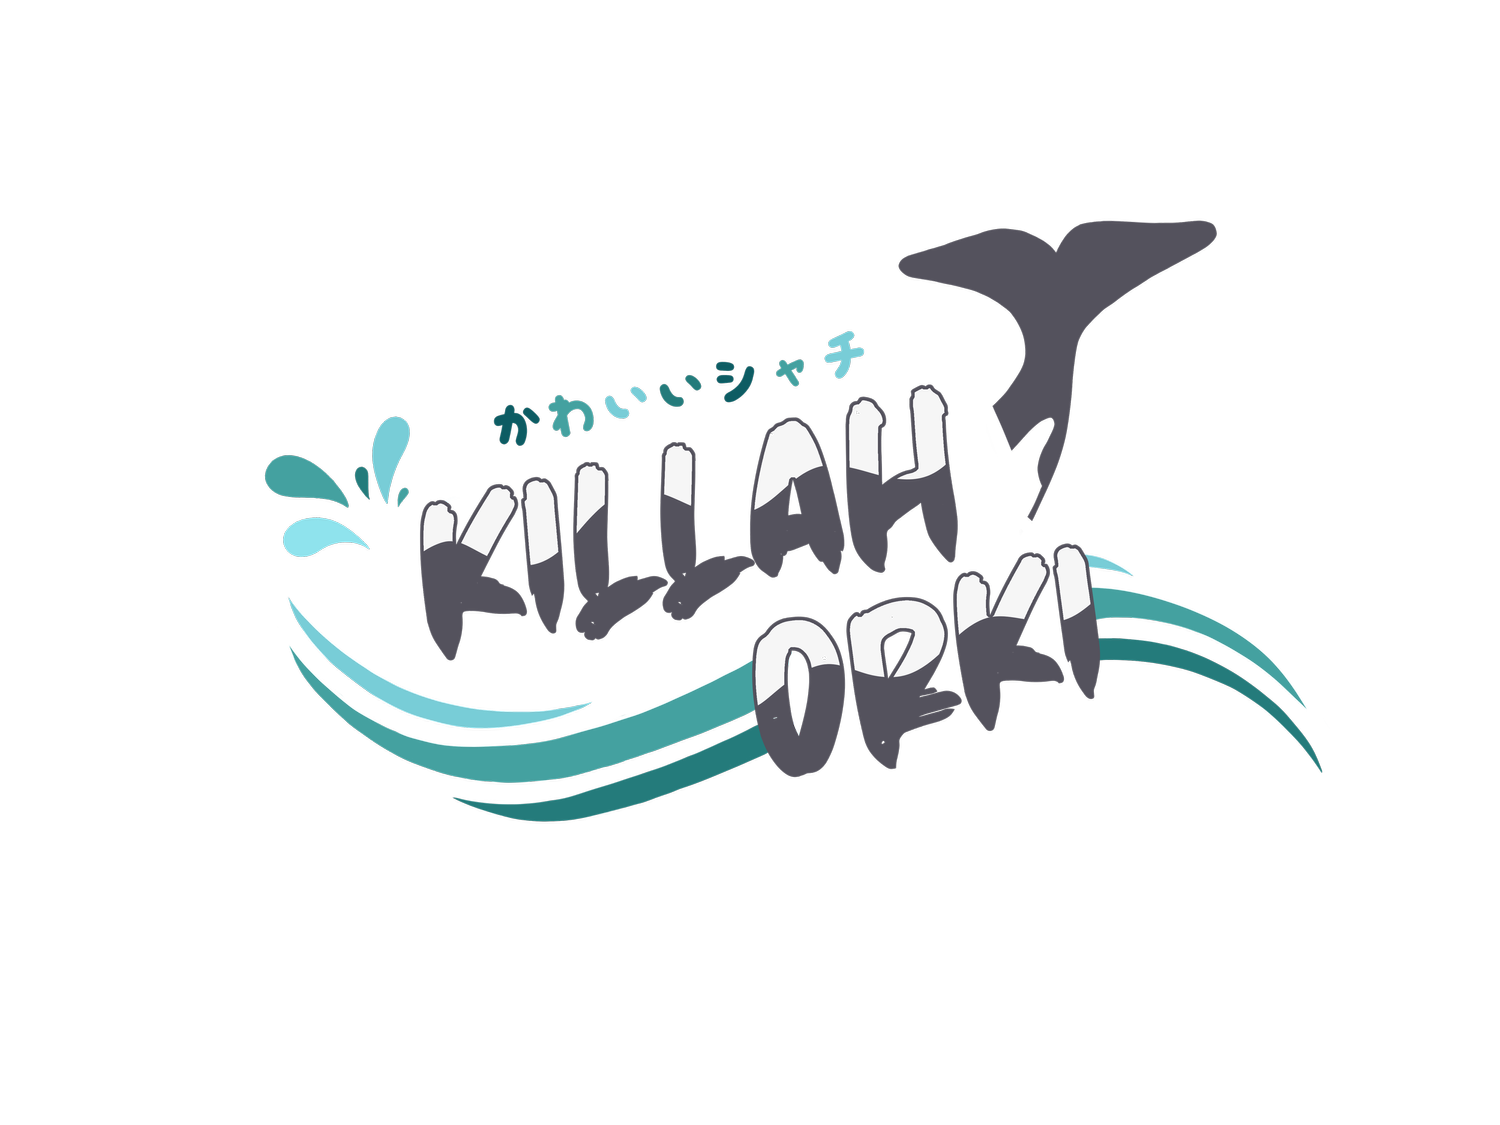 Killah Orki - Orca (Killer Whale) Vtuber